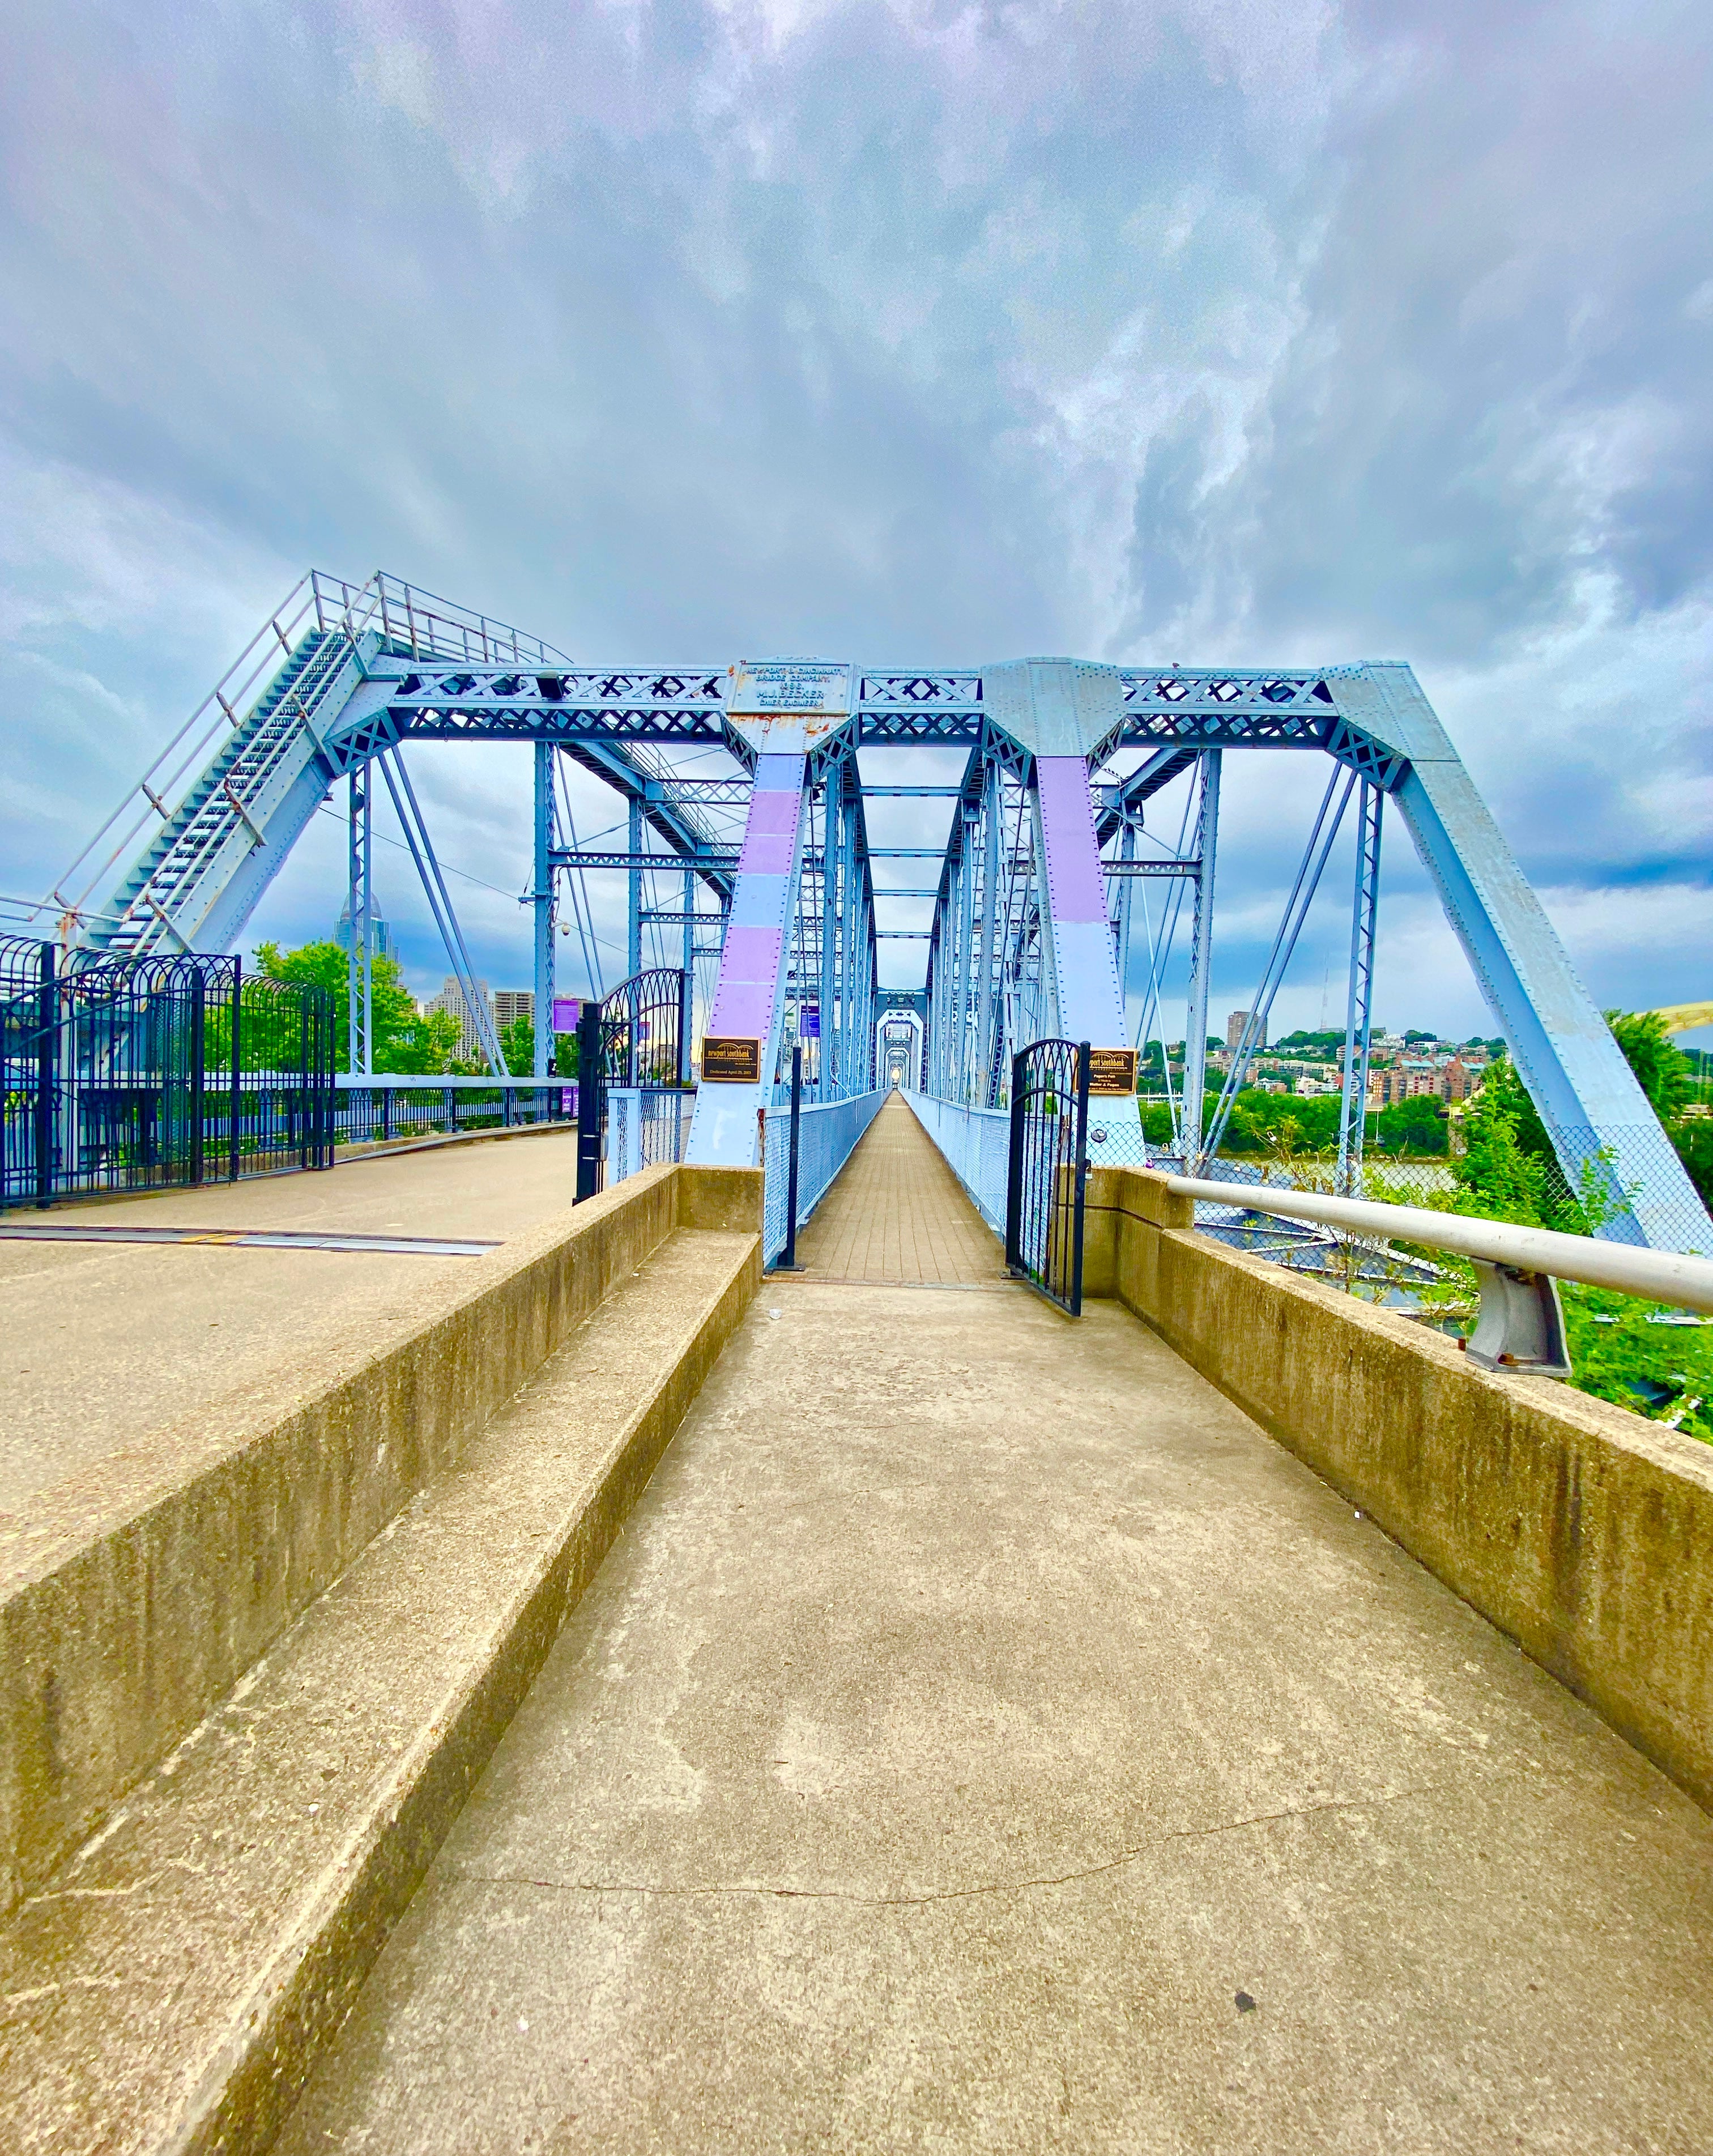 Purple People Bridge in Cincinnati Ohio